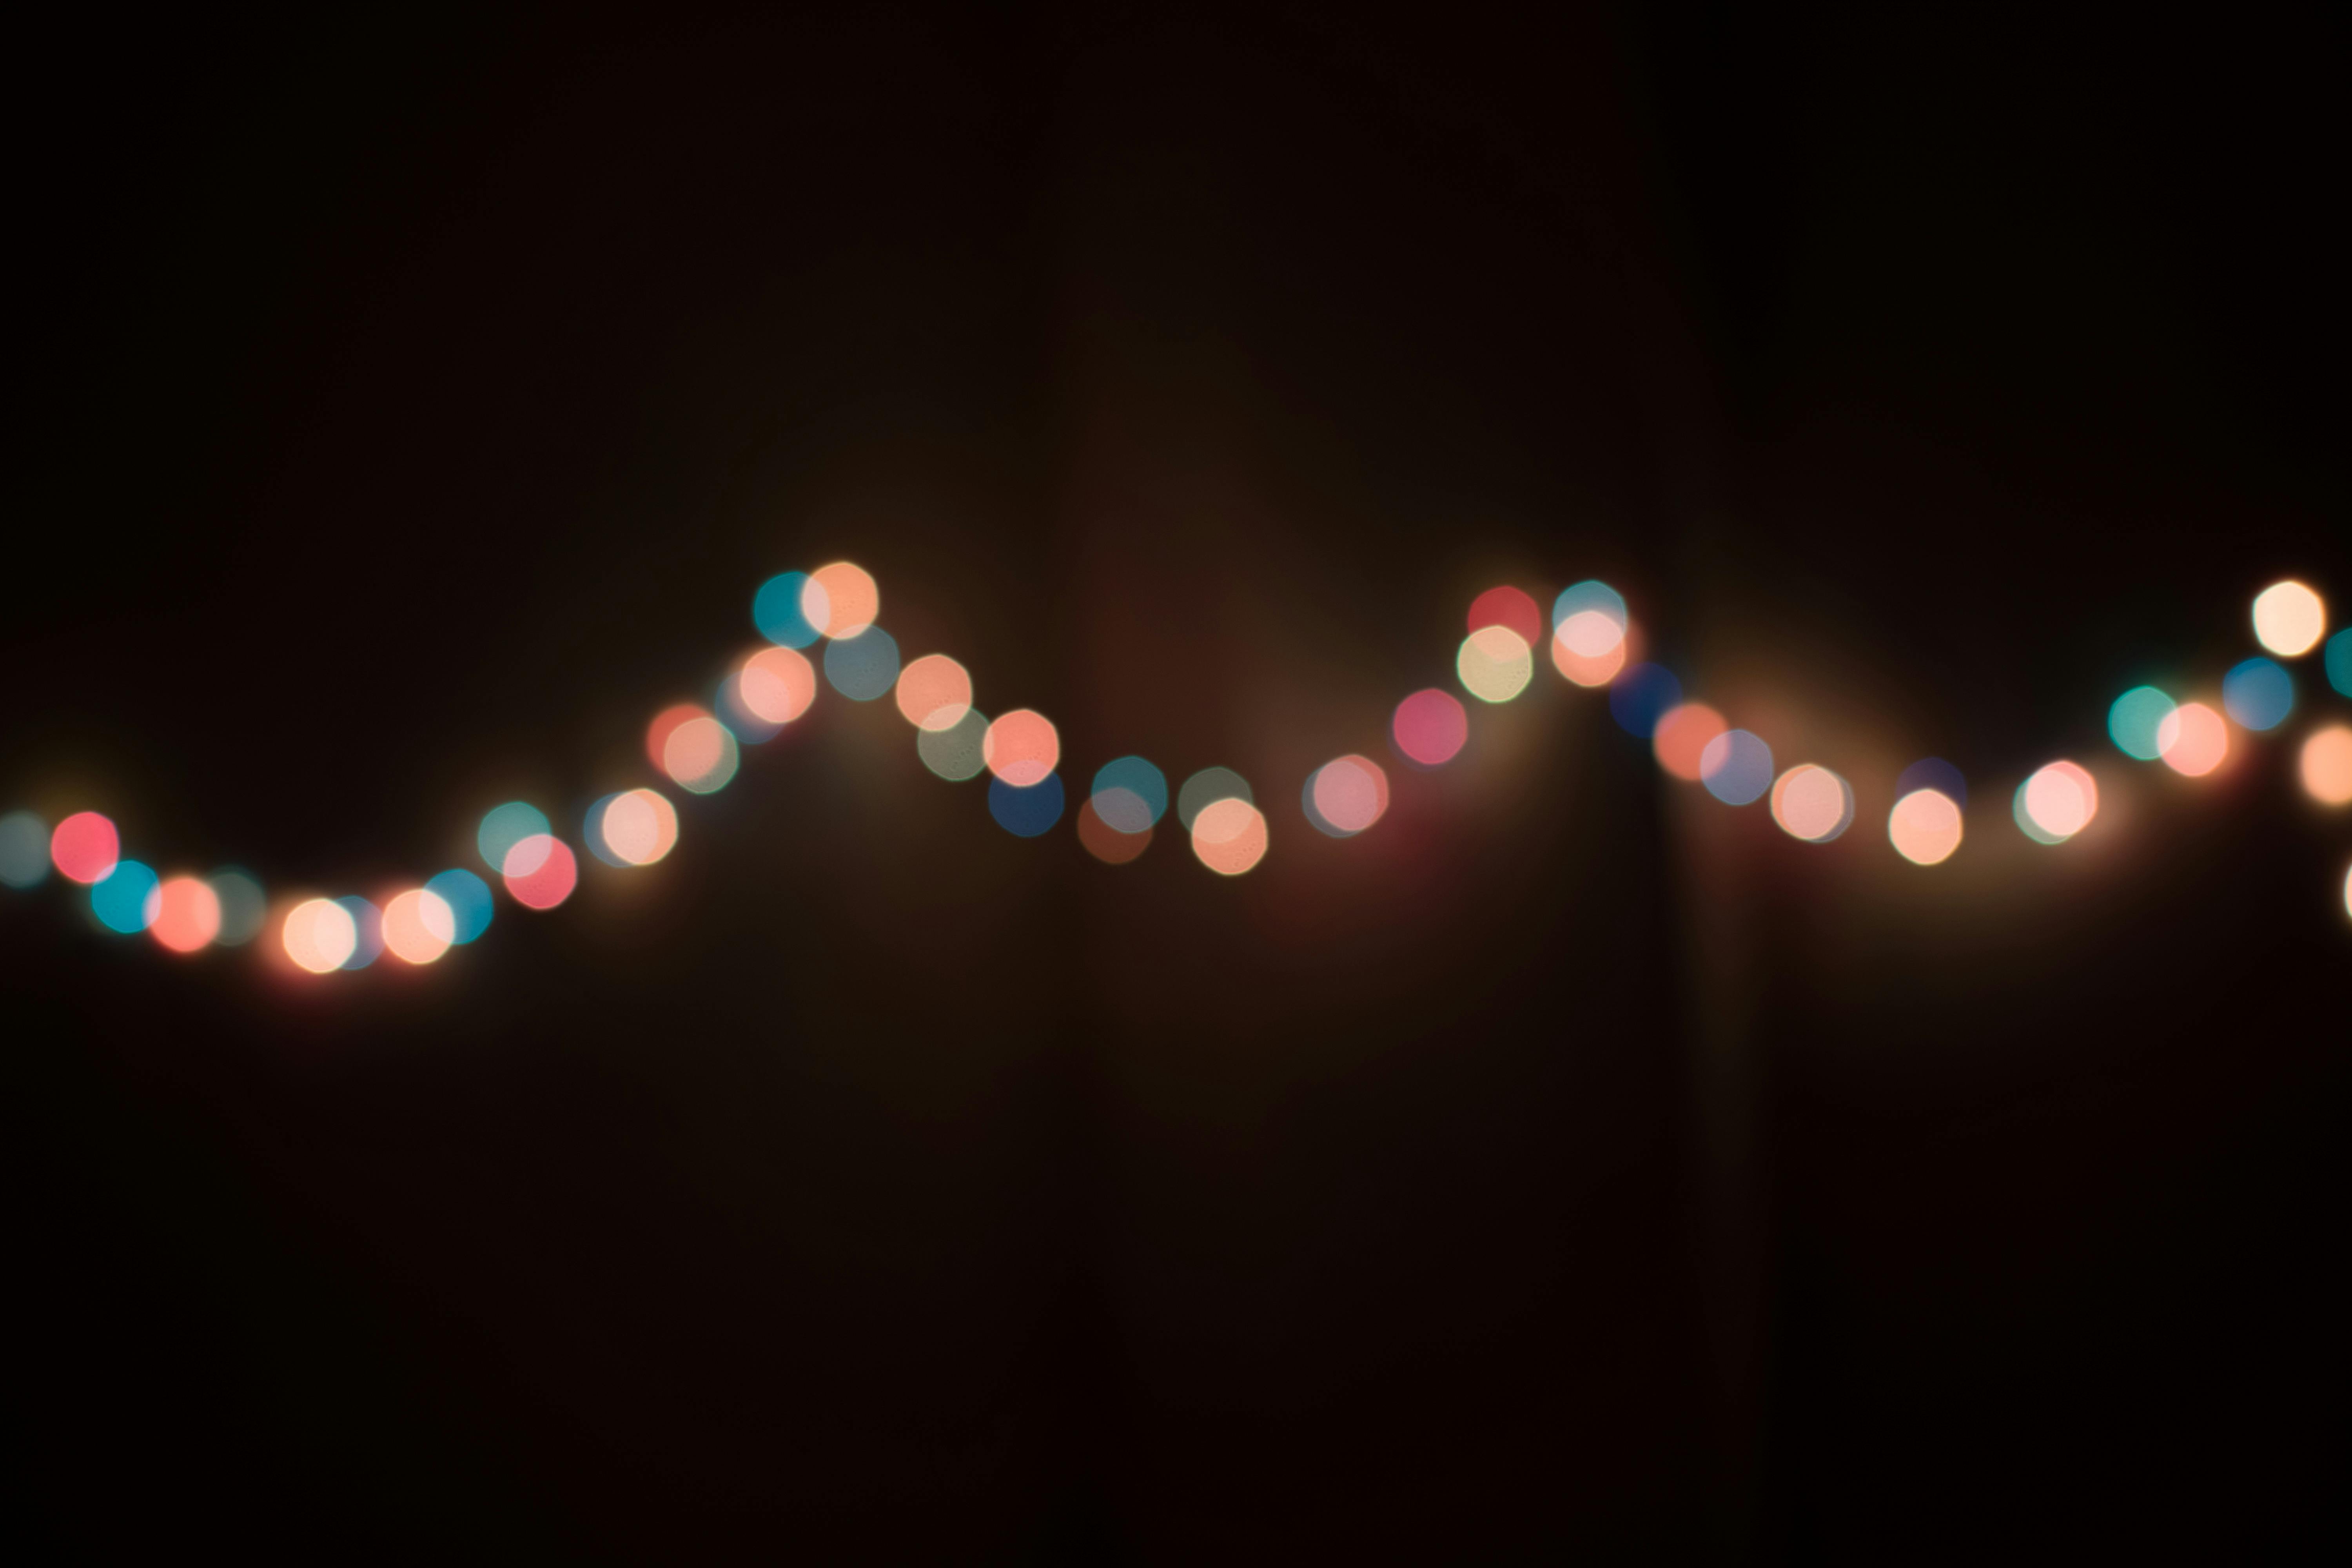 Defocused Image of Illuminated Christmas Tree · Free Stock